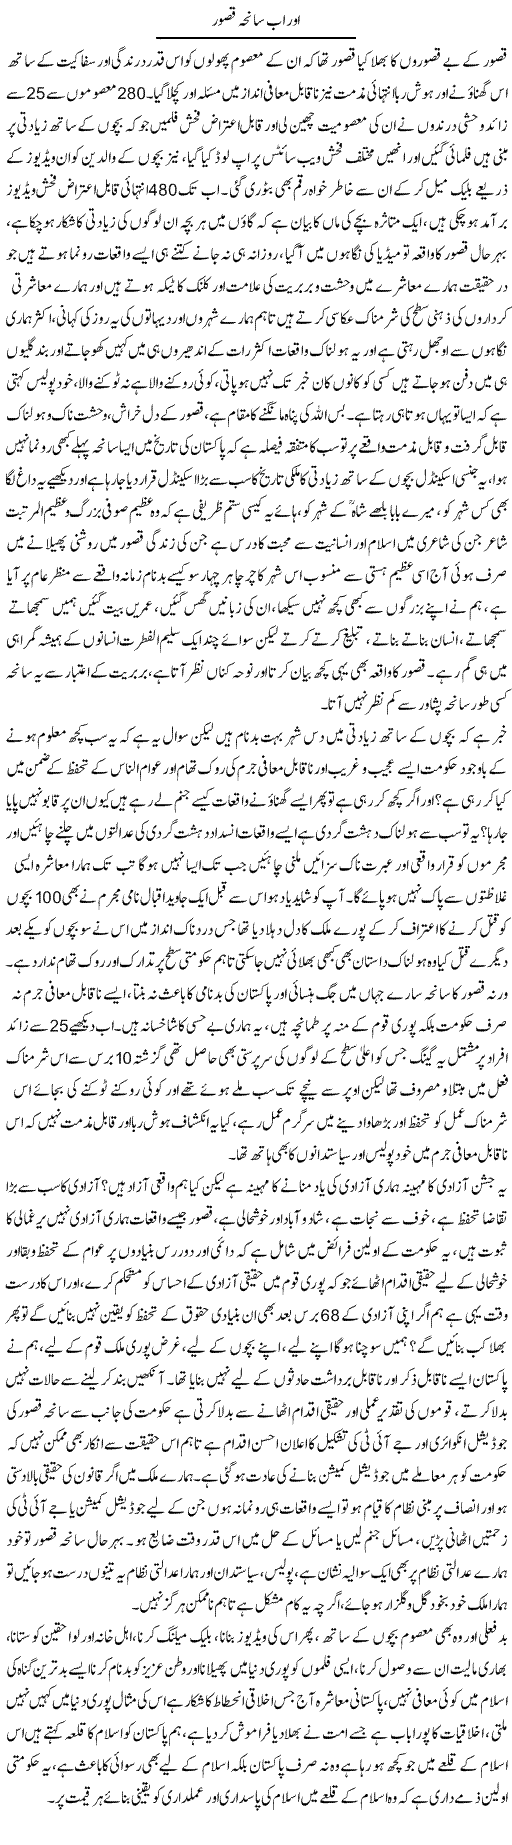 Aur Ab Saneha Qasur | Dr. Muhammad Tayyab Khan Singhanvi | Daily Urdu Columns